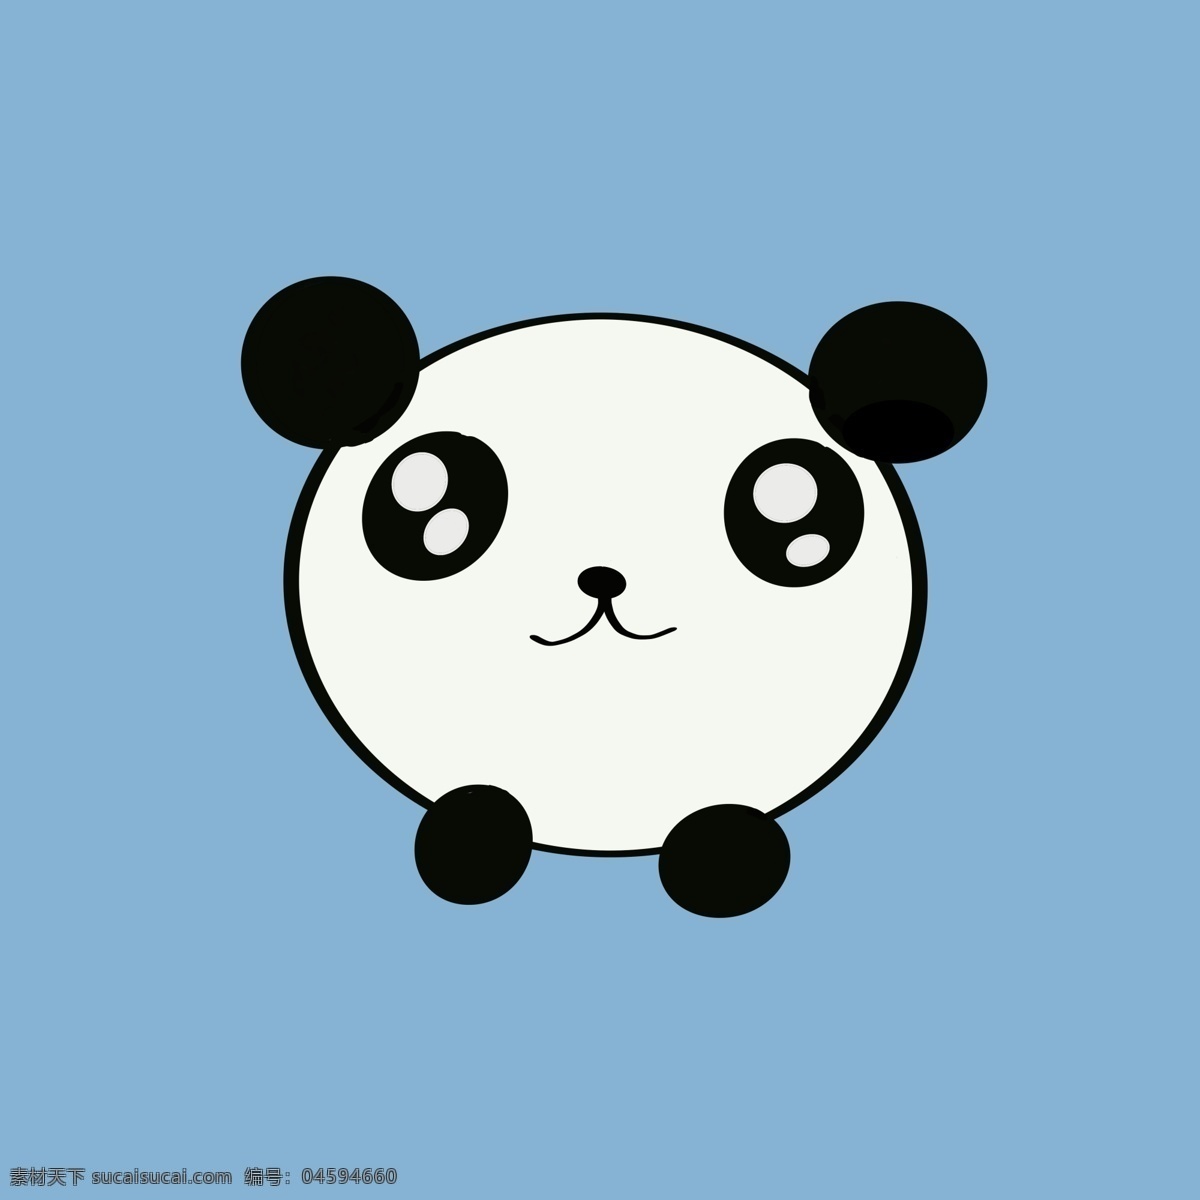 可爱小熊猫 熊猫 可爱 熊猫头像 卡通熊猫 小熊猫 头像 绘画练习 动漫动画